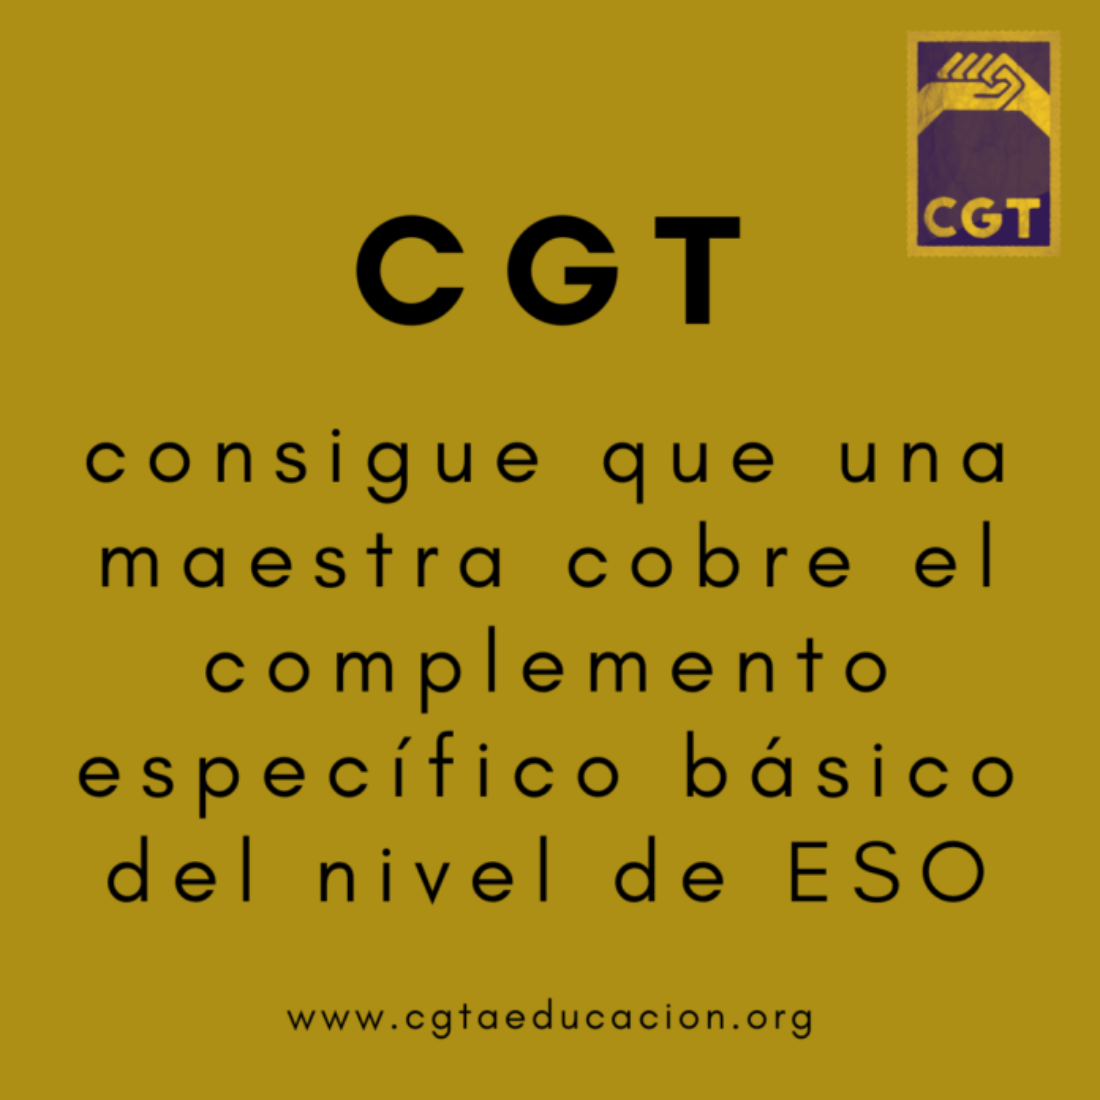 CGT consigue que una maestra cobre el complemento específico básico del nivel de ESO